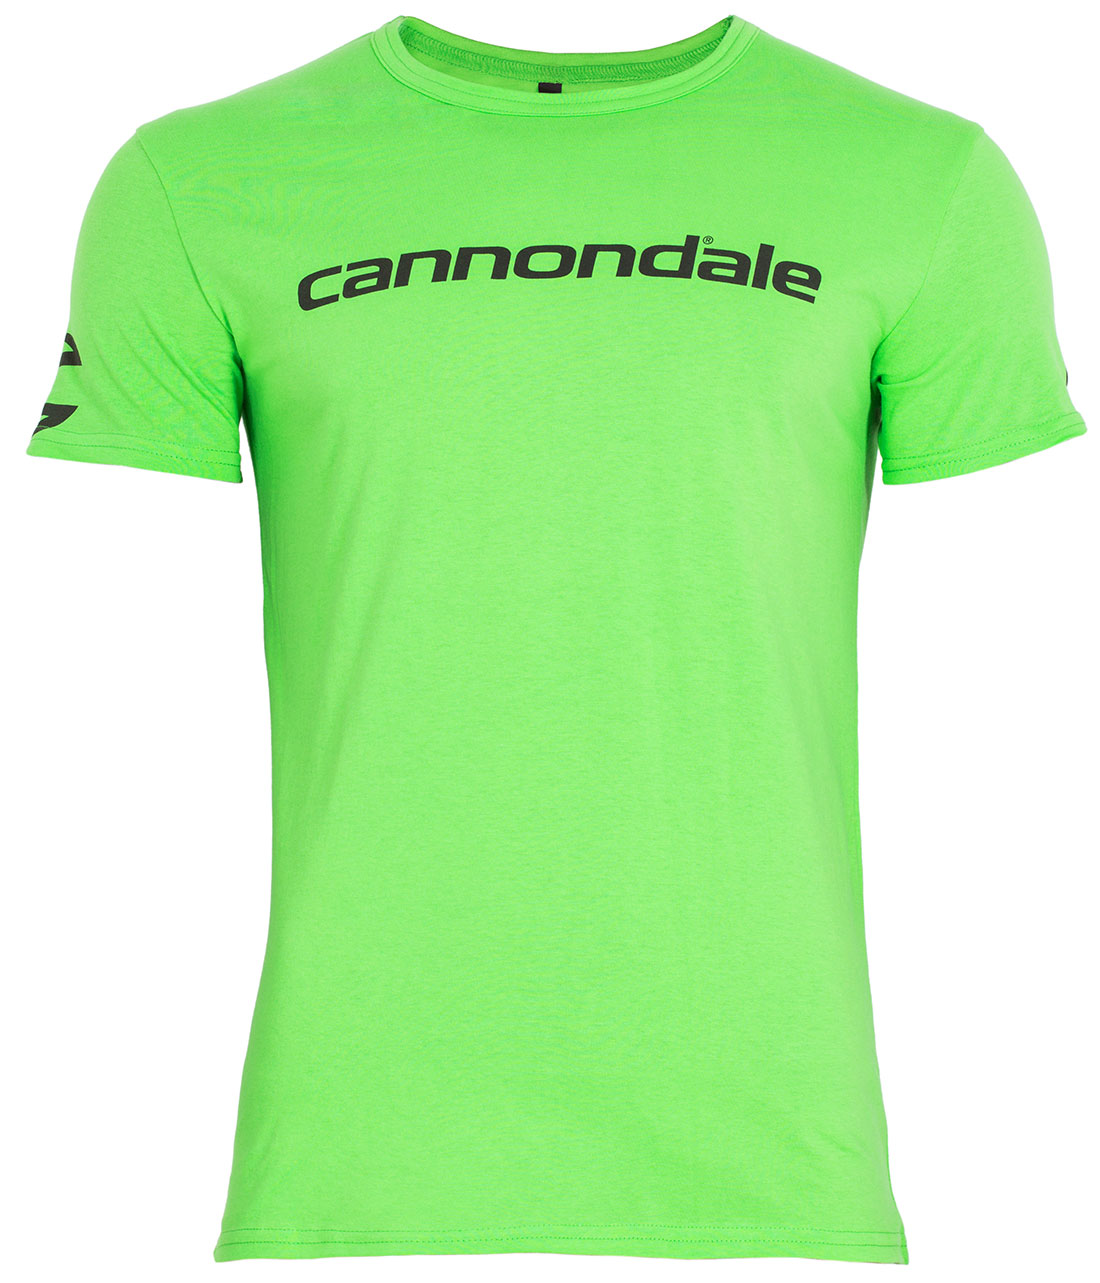 Футболка Cannondale с черным горизонтальным логотипом, зелёная, размер L фото 